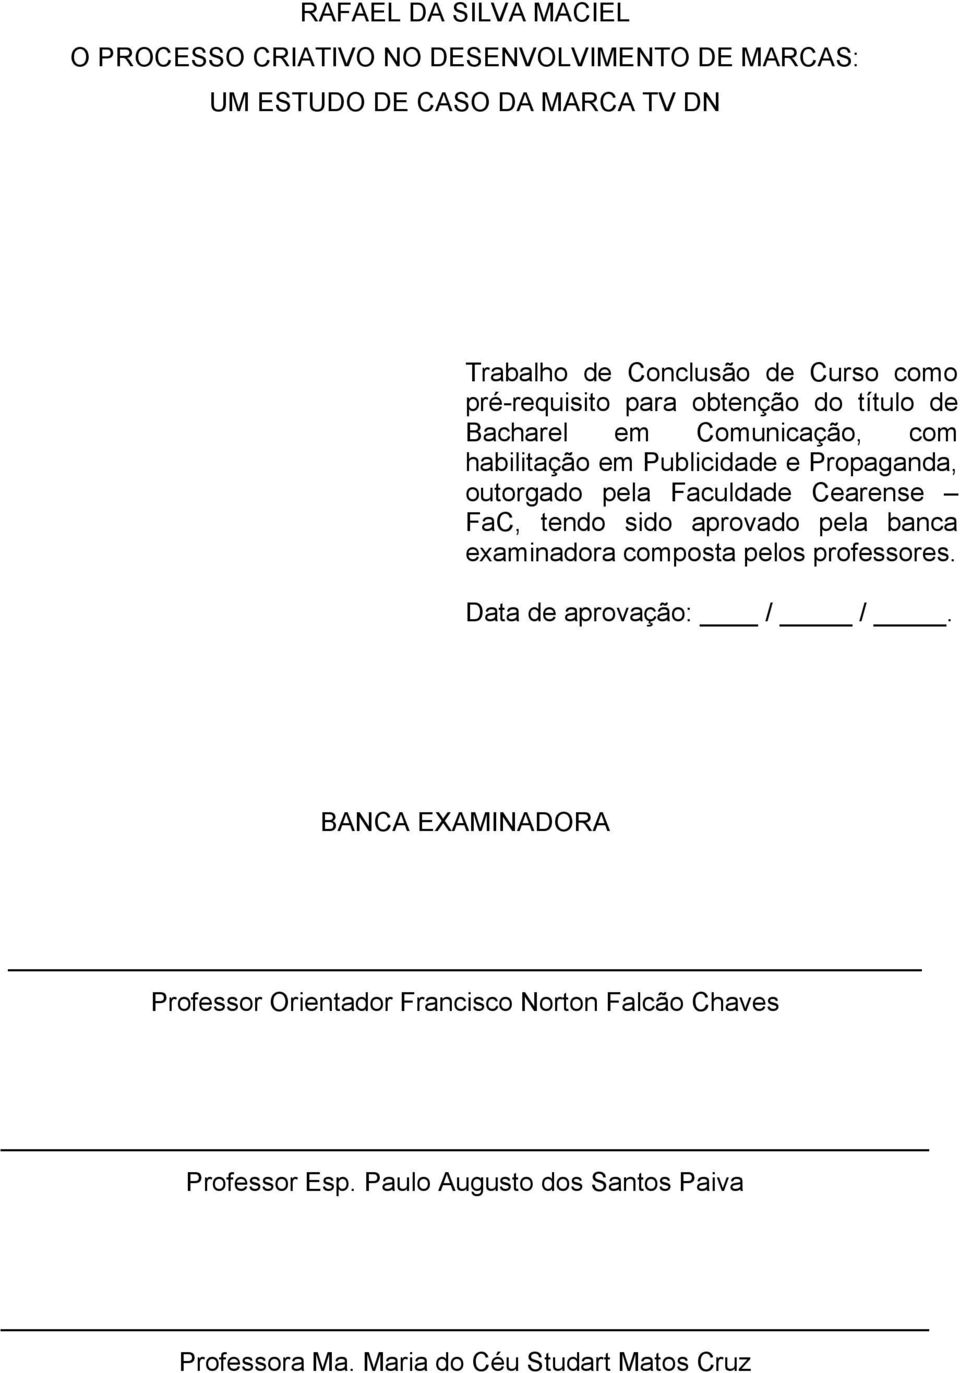 Faculdade Cearense FaC, tendo sido aprovado pela banca examinadora composta pelos professores. Data de aprovação: / /.